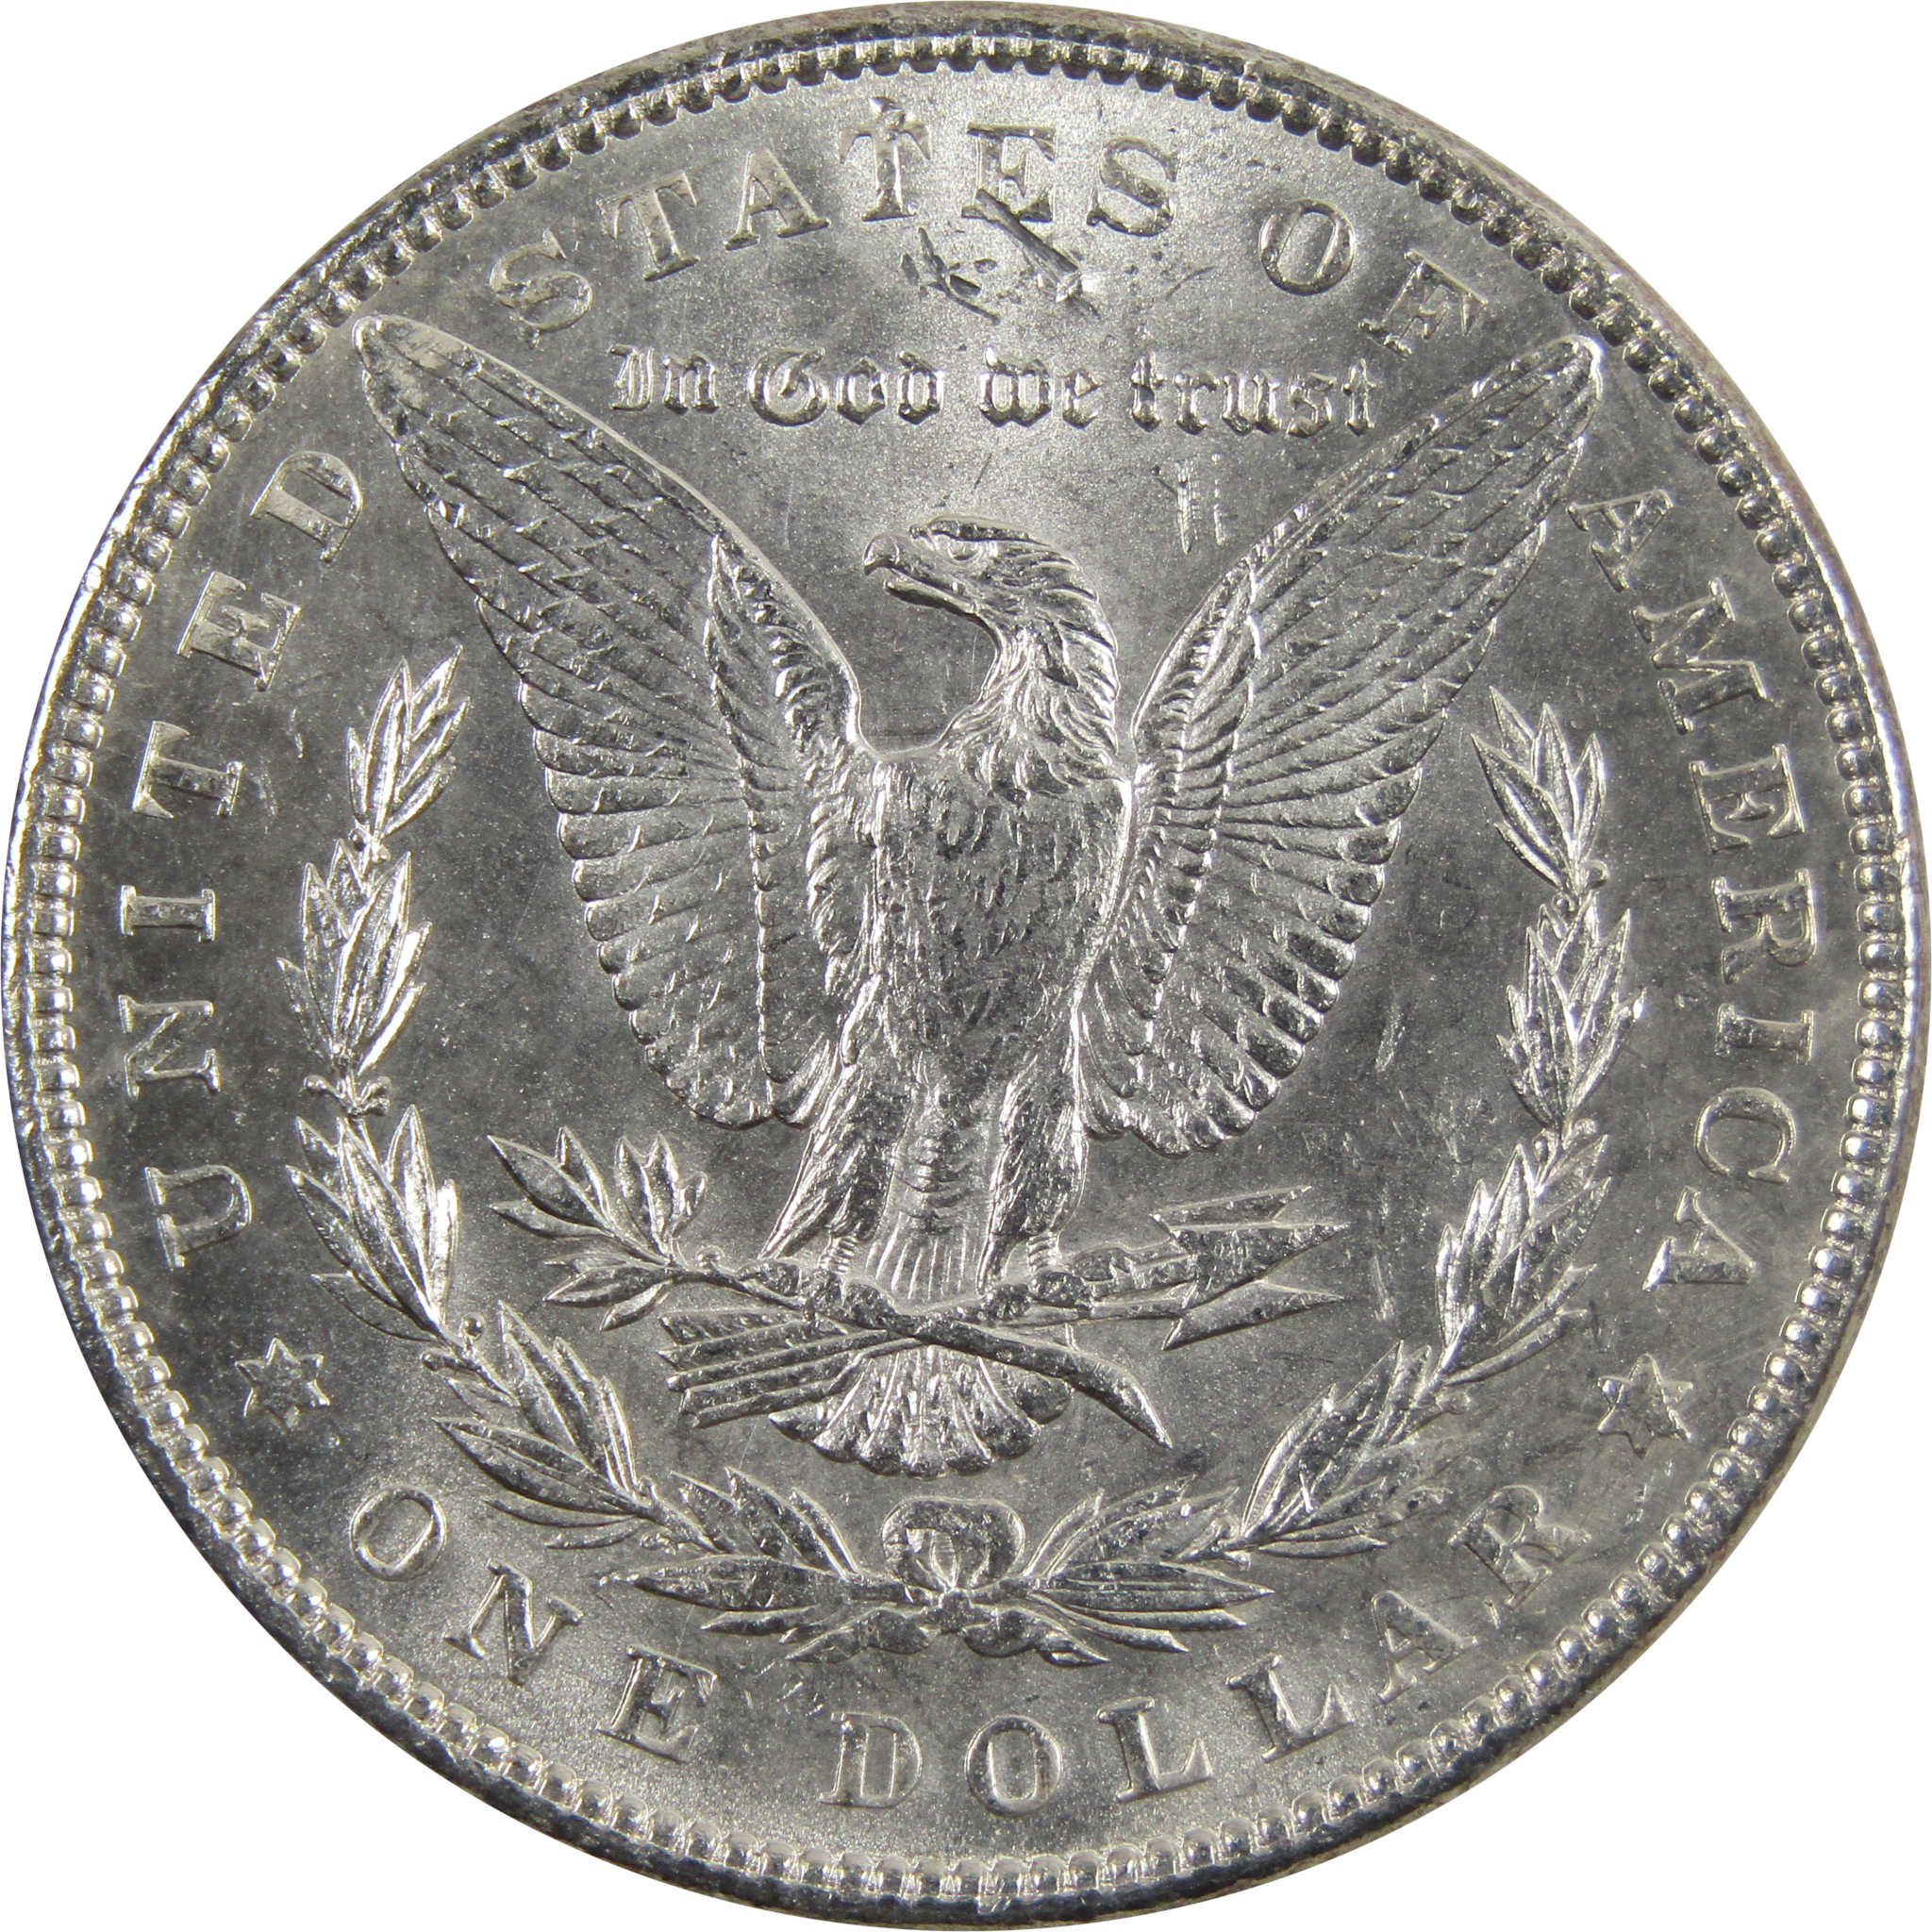 1897 Morgan Dollar BU Uncirculated 90% Silver $1 Coin SKU:I5159 - Morgan coin - Morgan silver dollar - Morgan silver dollar for sale - Profile Coins &amp; Collectibles